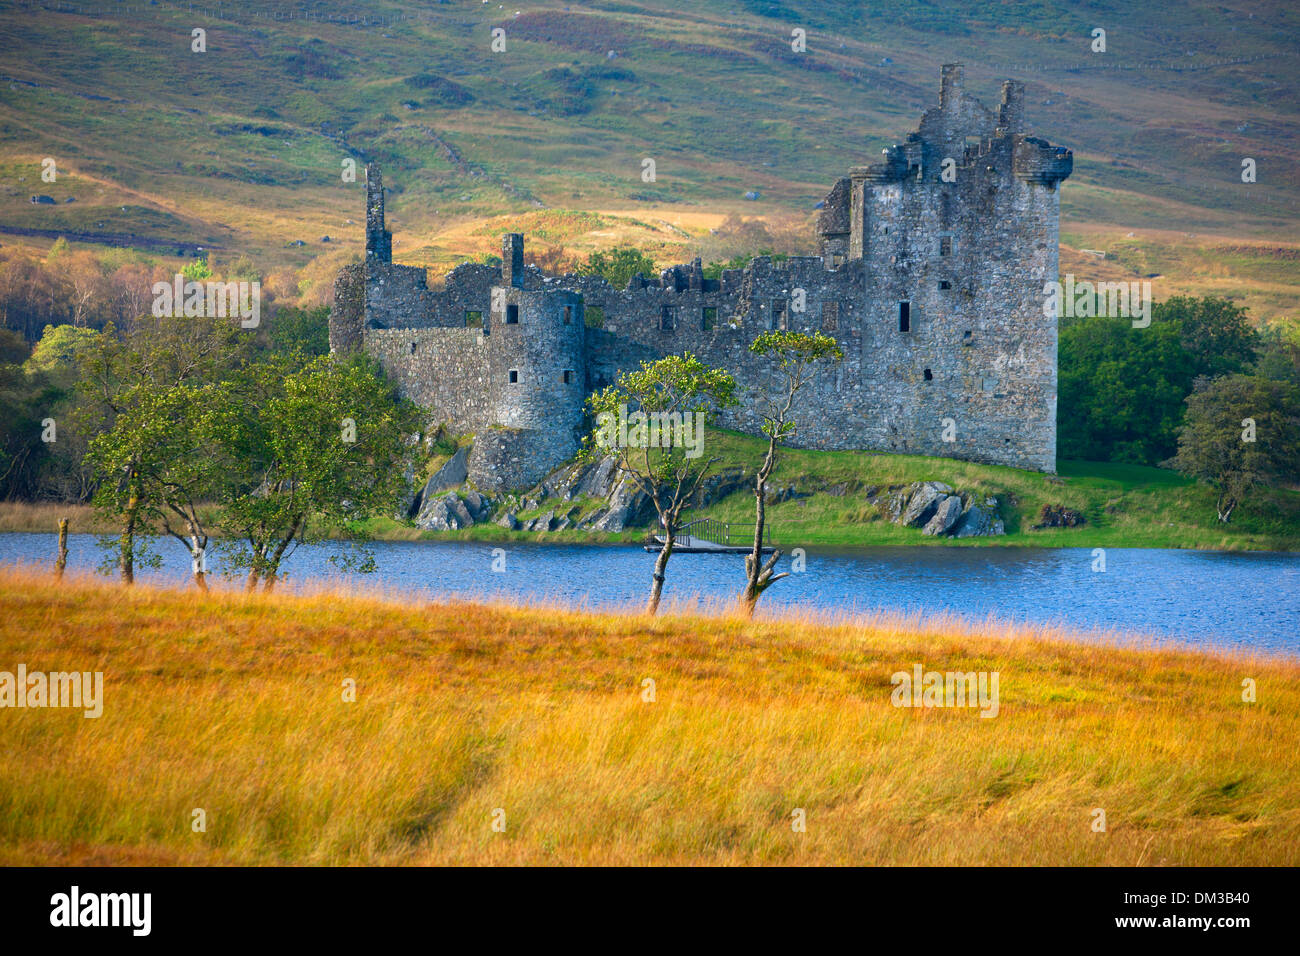 Le Château de Kilchurn, Grande-Bretagne, Europe, l'Ecosse, Loch Awe, lac, eau, château, ruines, arbres, prairie, automne Banque D'Images